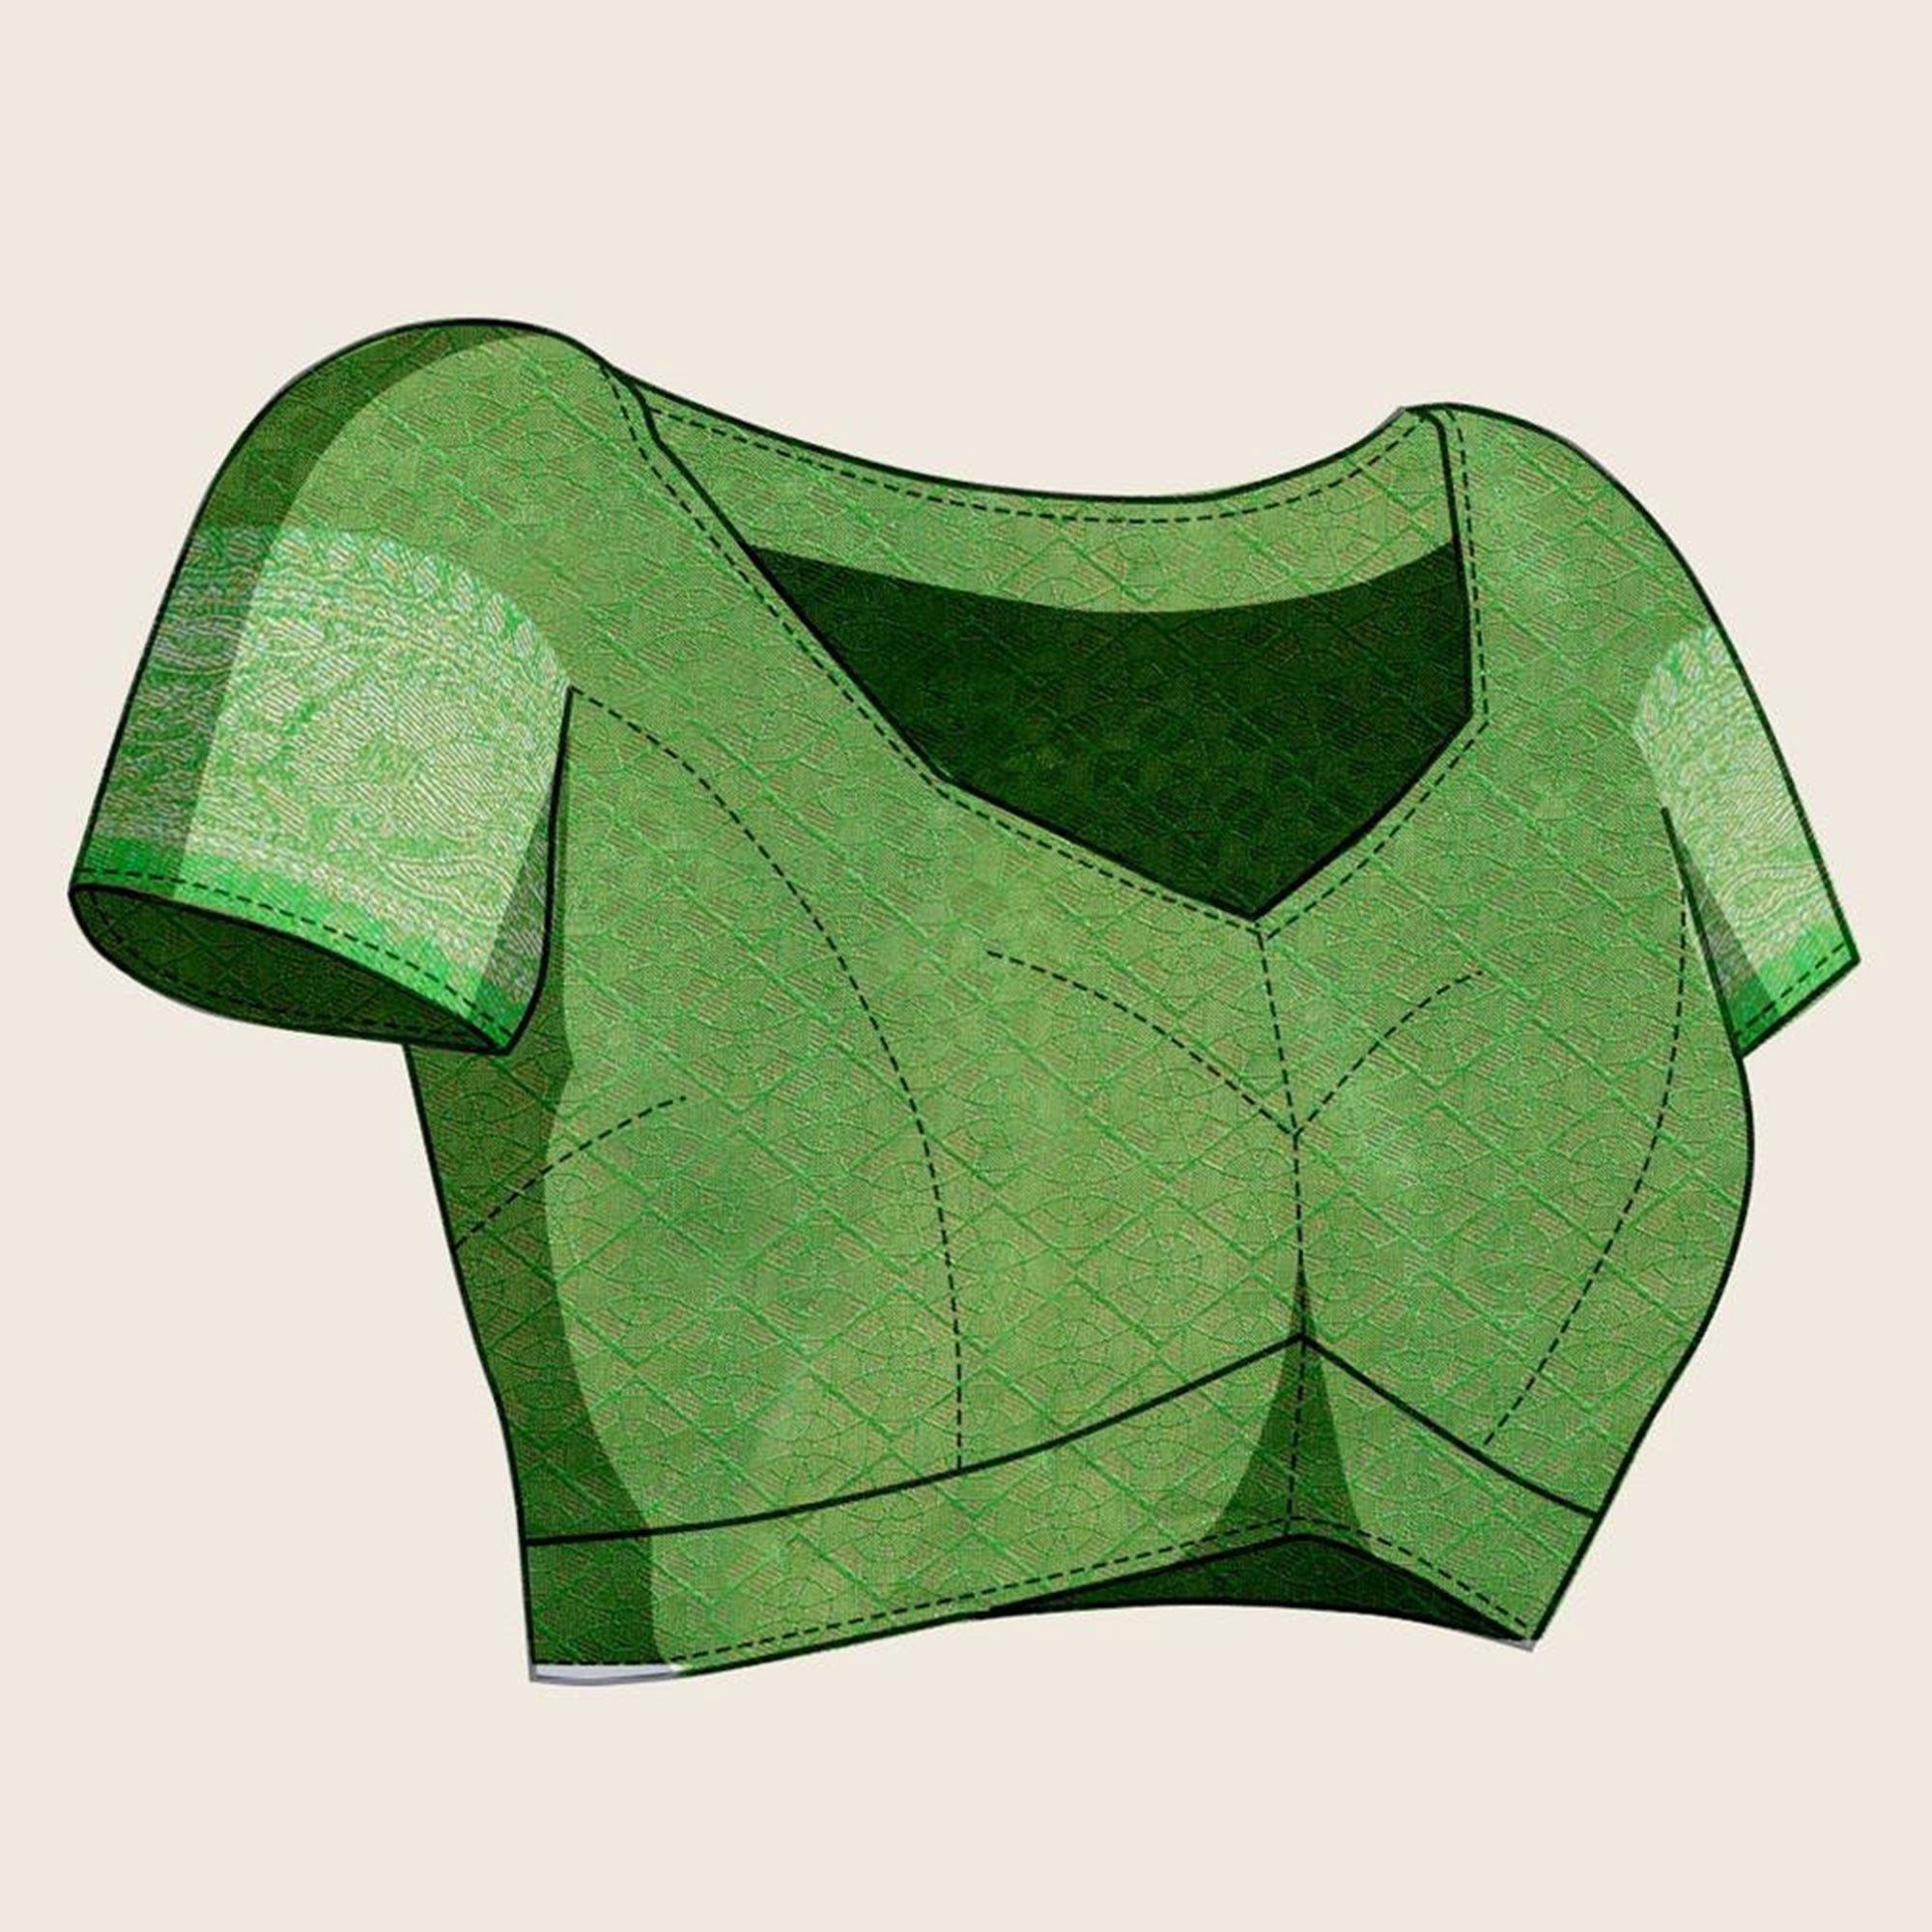 Green Floral Digital Printed With Woven Banarasi Silk Saree